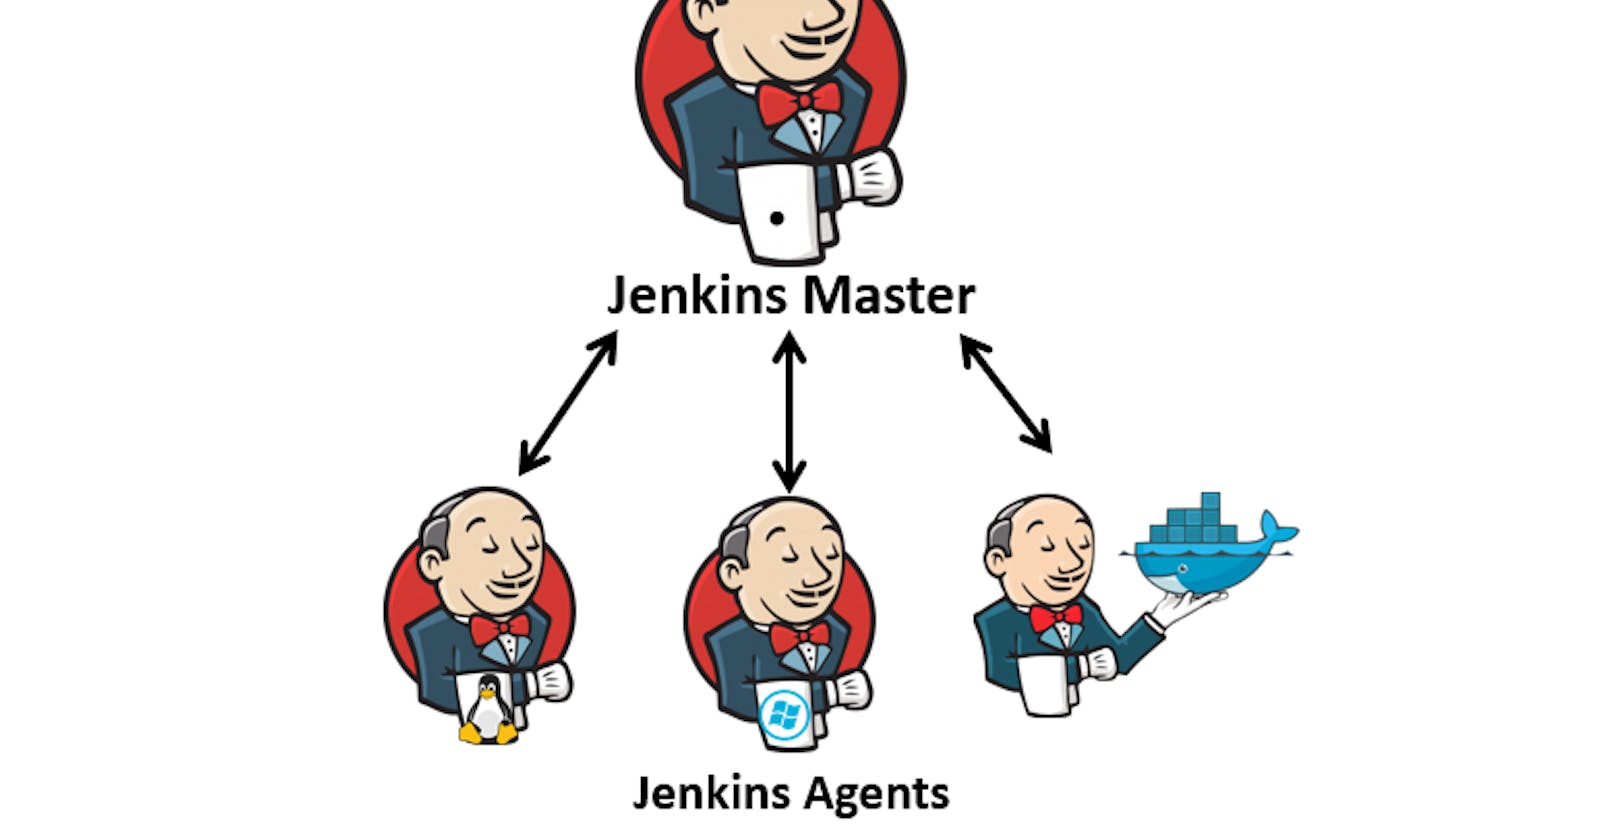 Set up your jenkins master &agent node